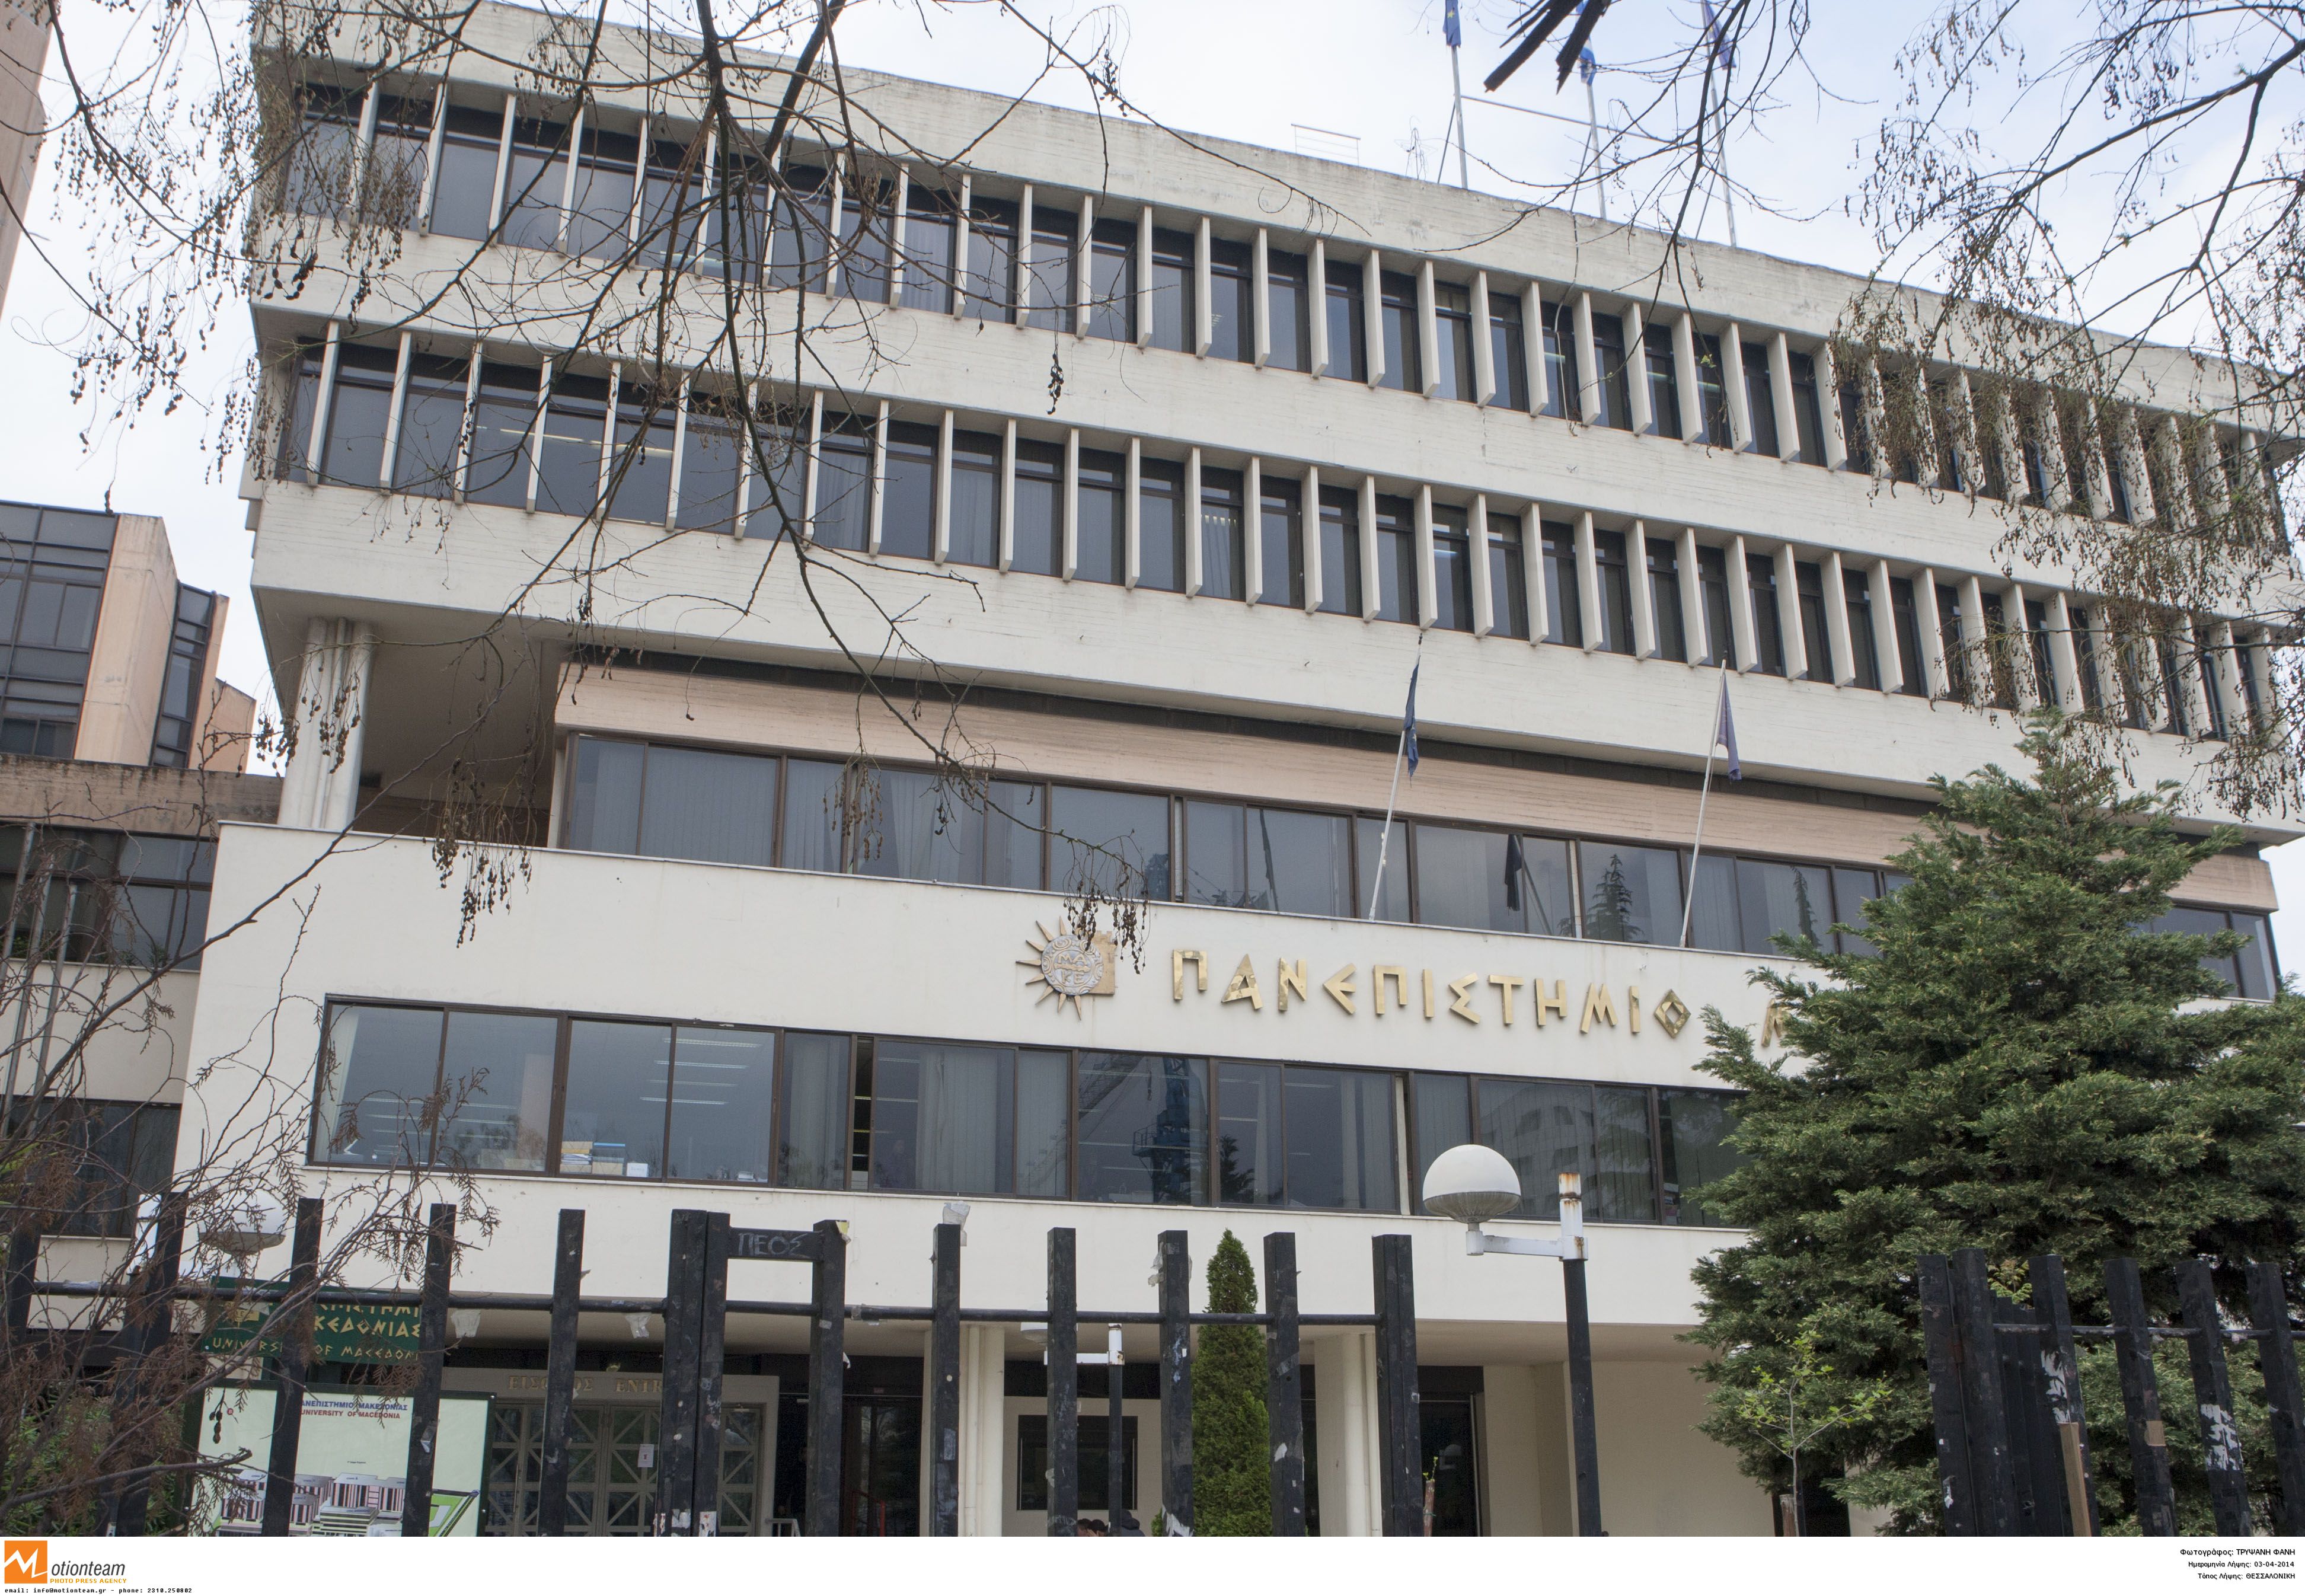 Αγνωστοι επιτέθηκαν σε φοιτητές του Πανεπιστημίου Μακεδονίας